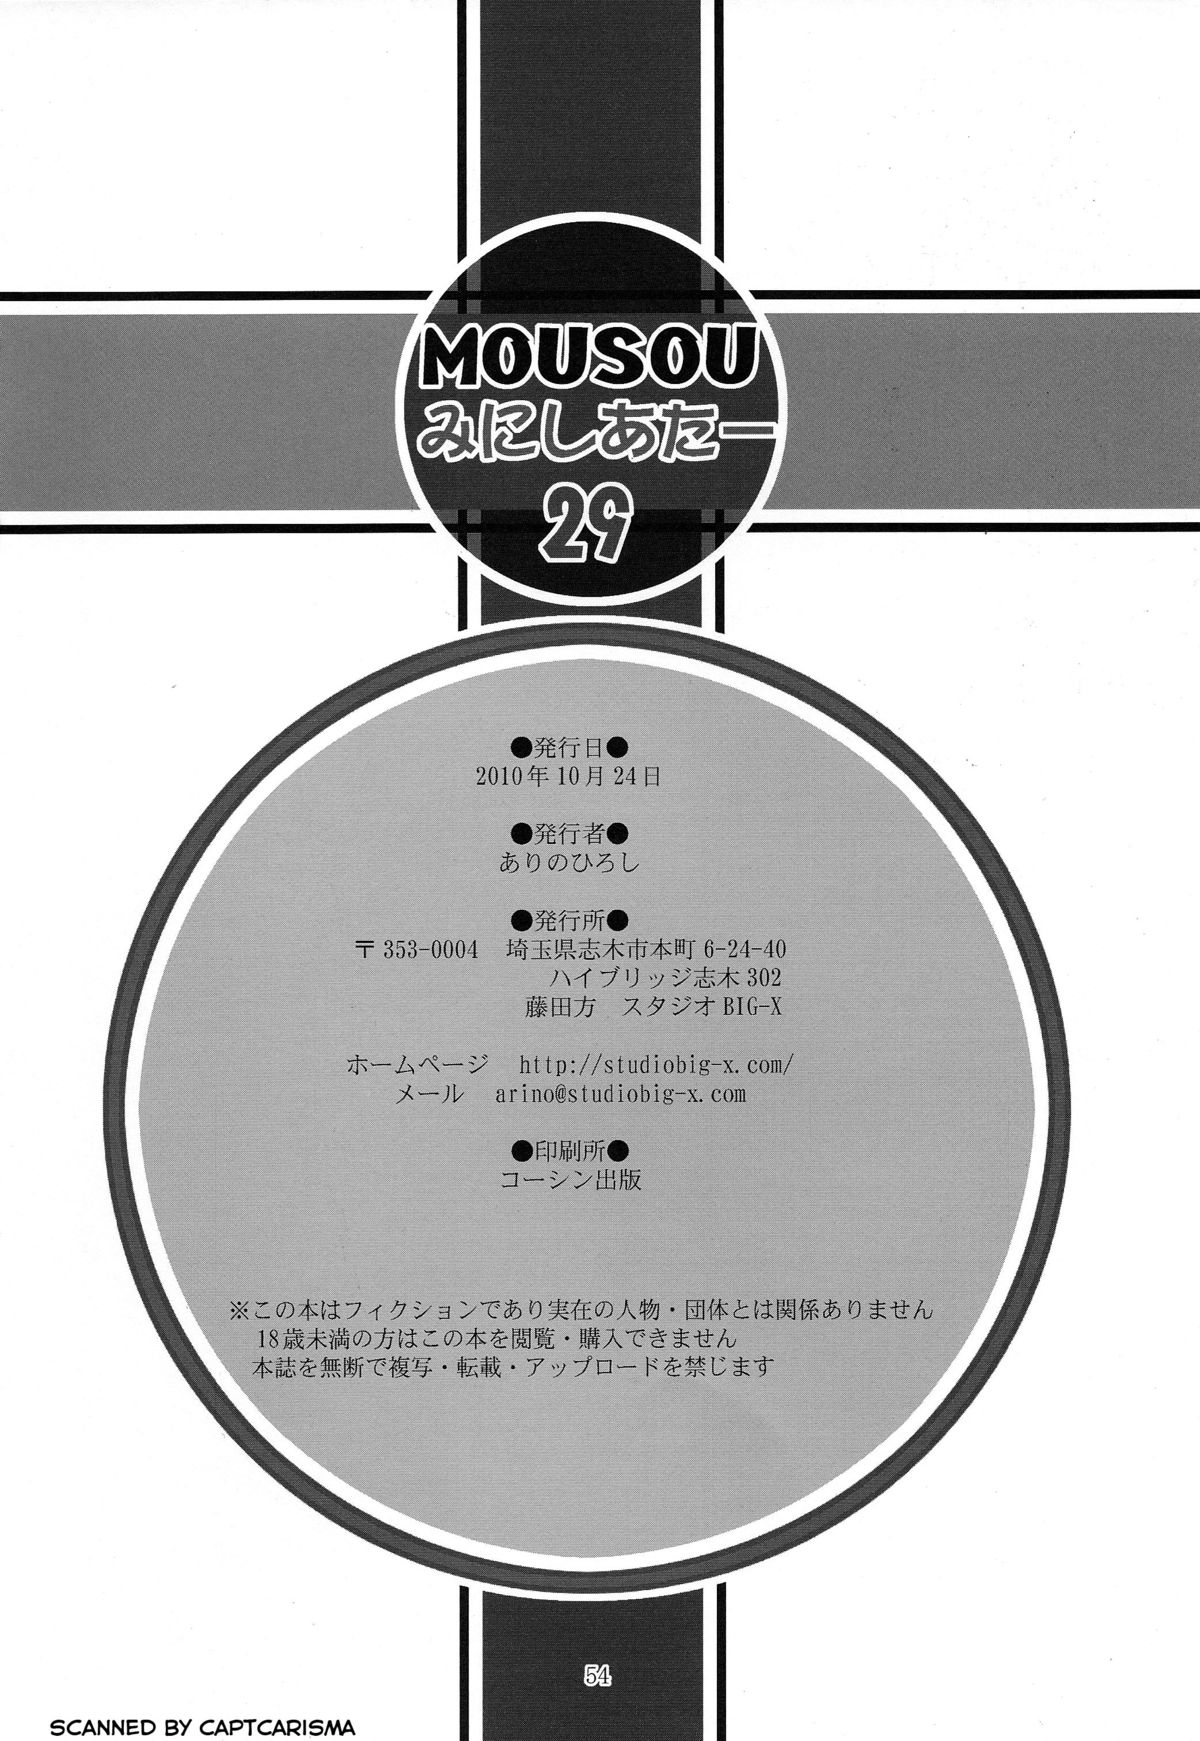 (ぷにケット 22) [スタジオBIG-X (ありのひろし)] MOUSOU THEATER 29 (俺の妹がこんなに可愛いわけがない)